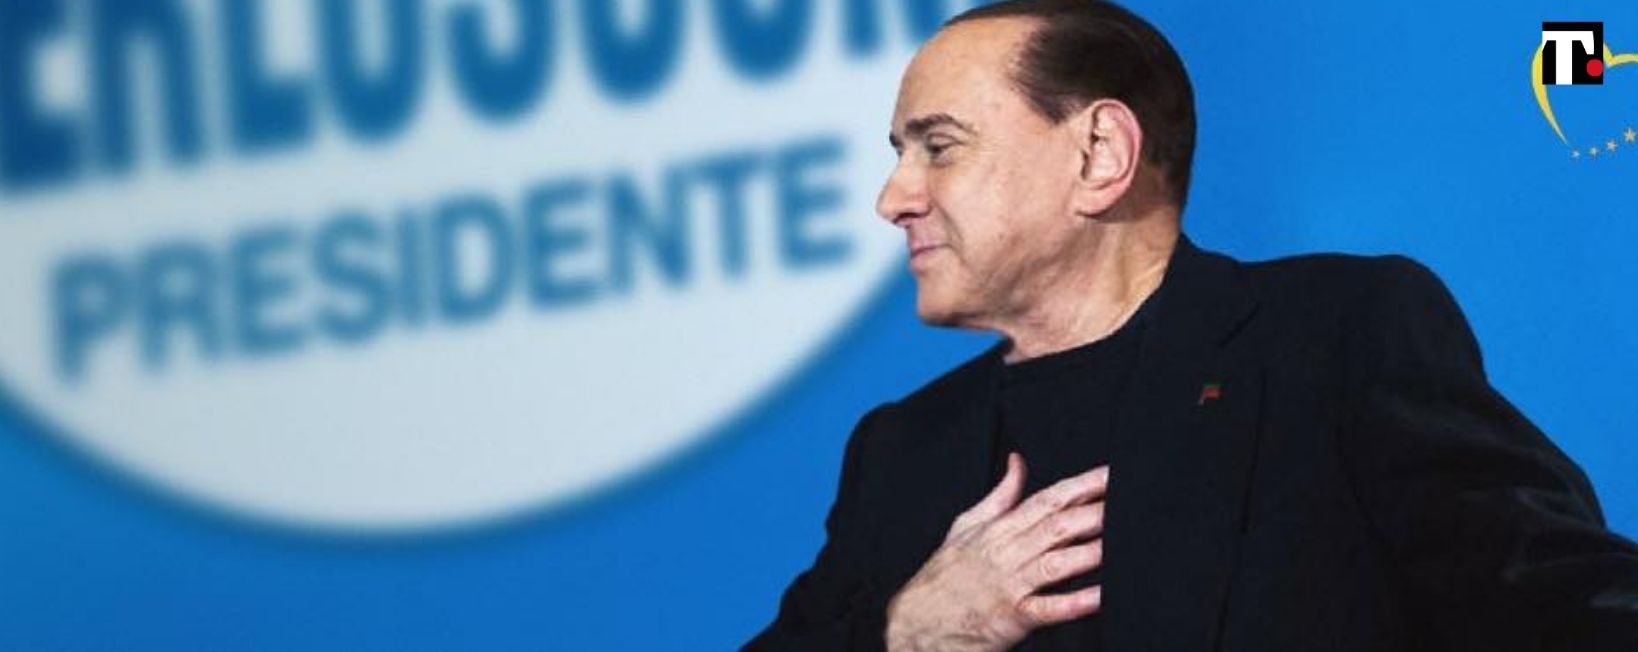 Il problema è che Berlusconi non molla, anche se oggi non intende sciogliere ancora la riserva